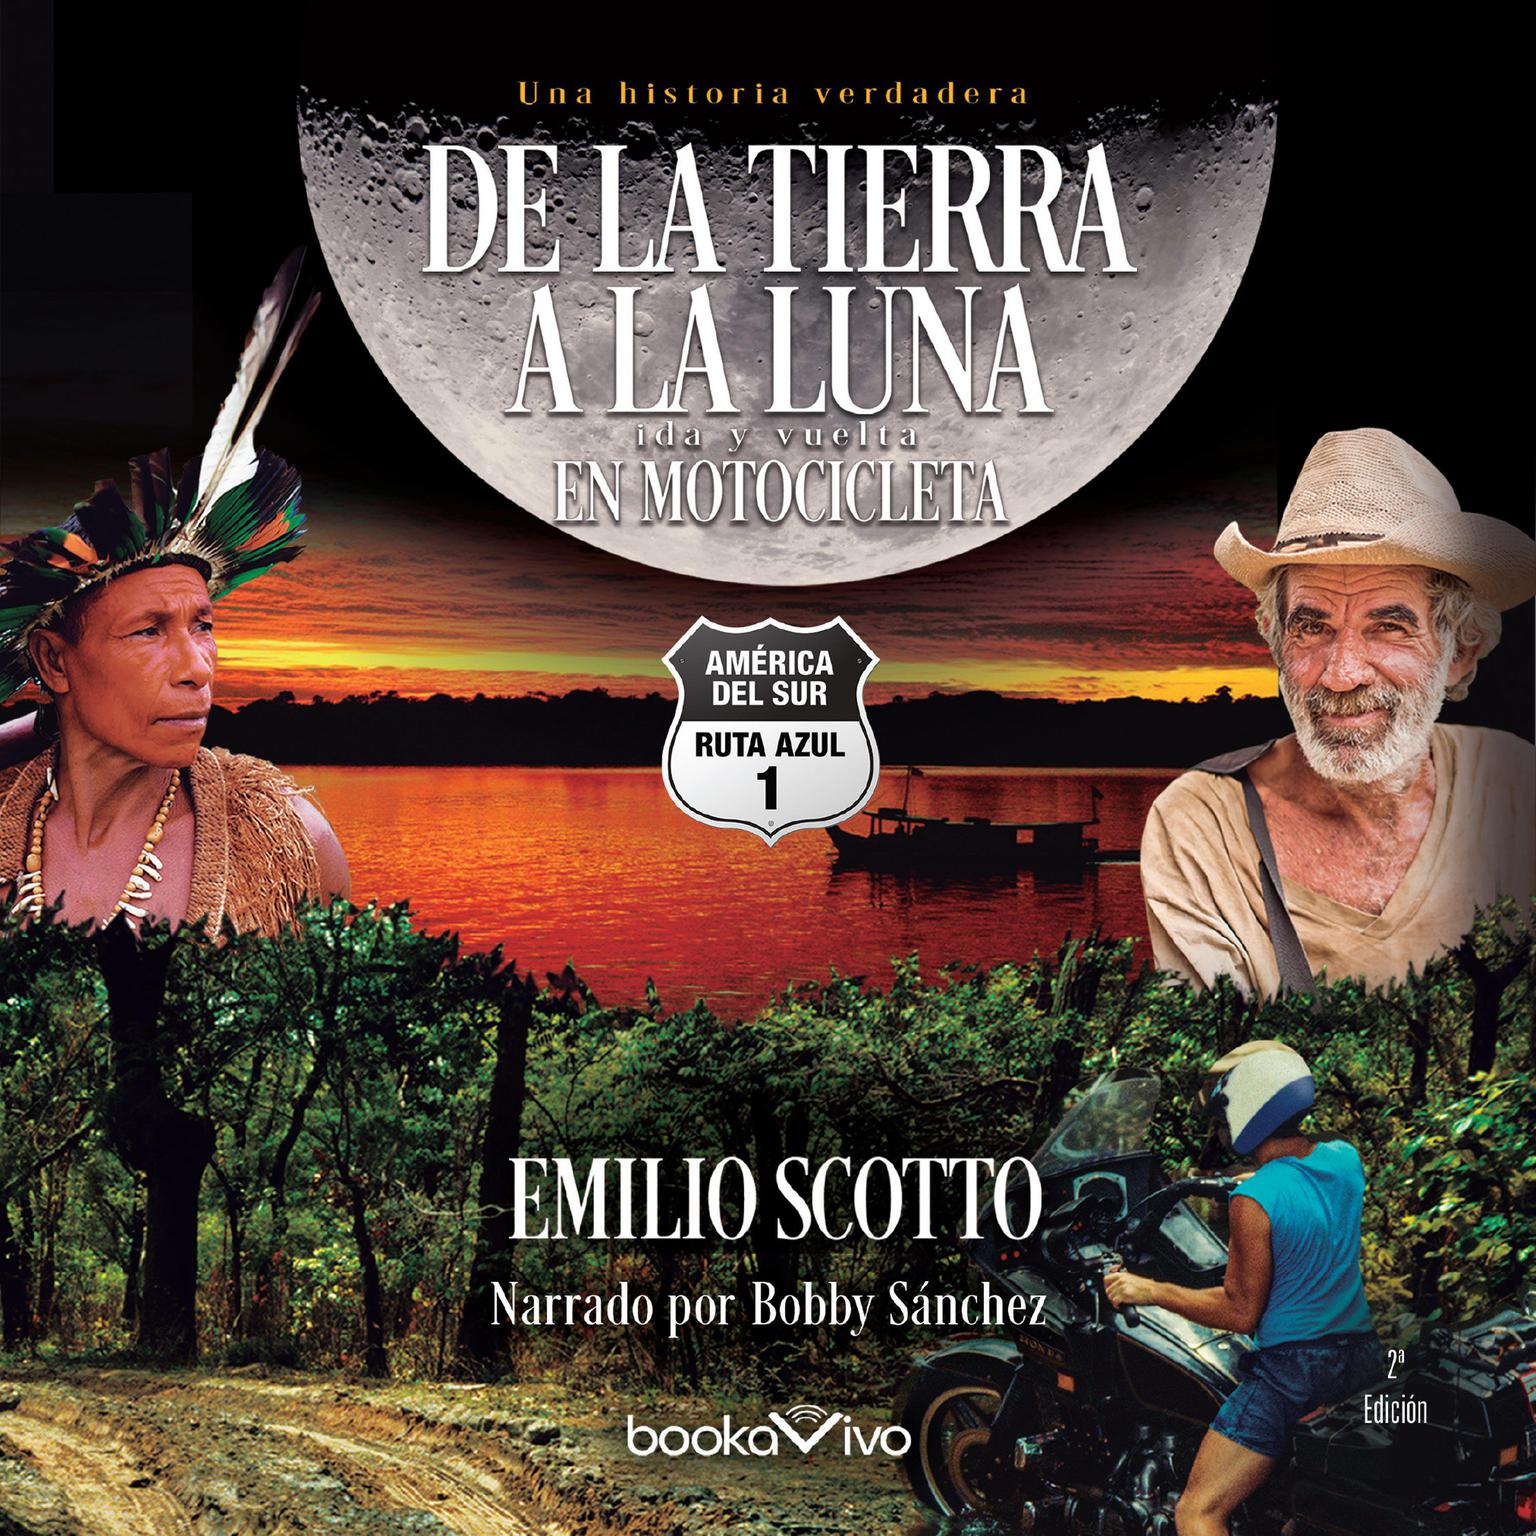 De la tierra a la luna en motocicleta Audiobook, by Emilio Scotto